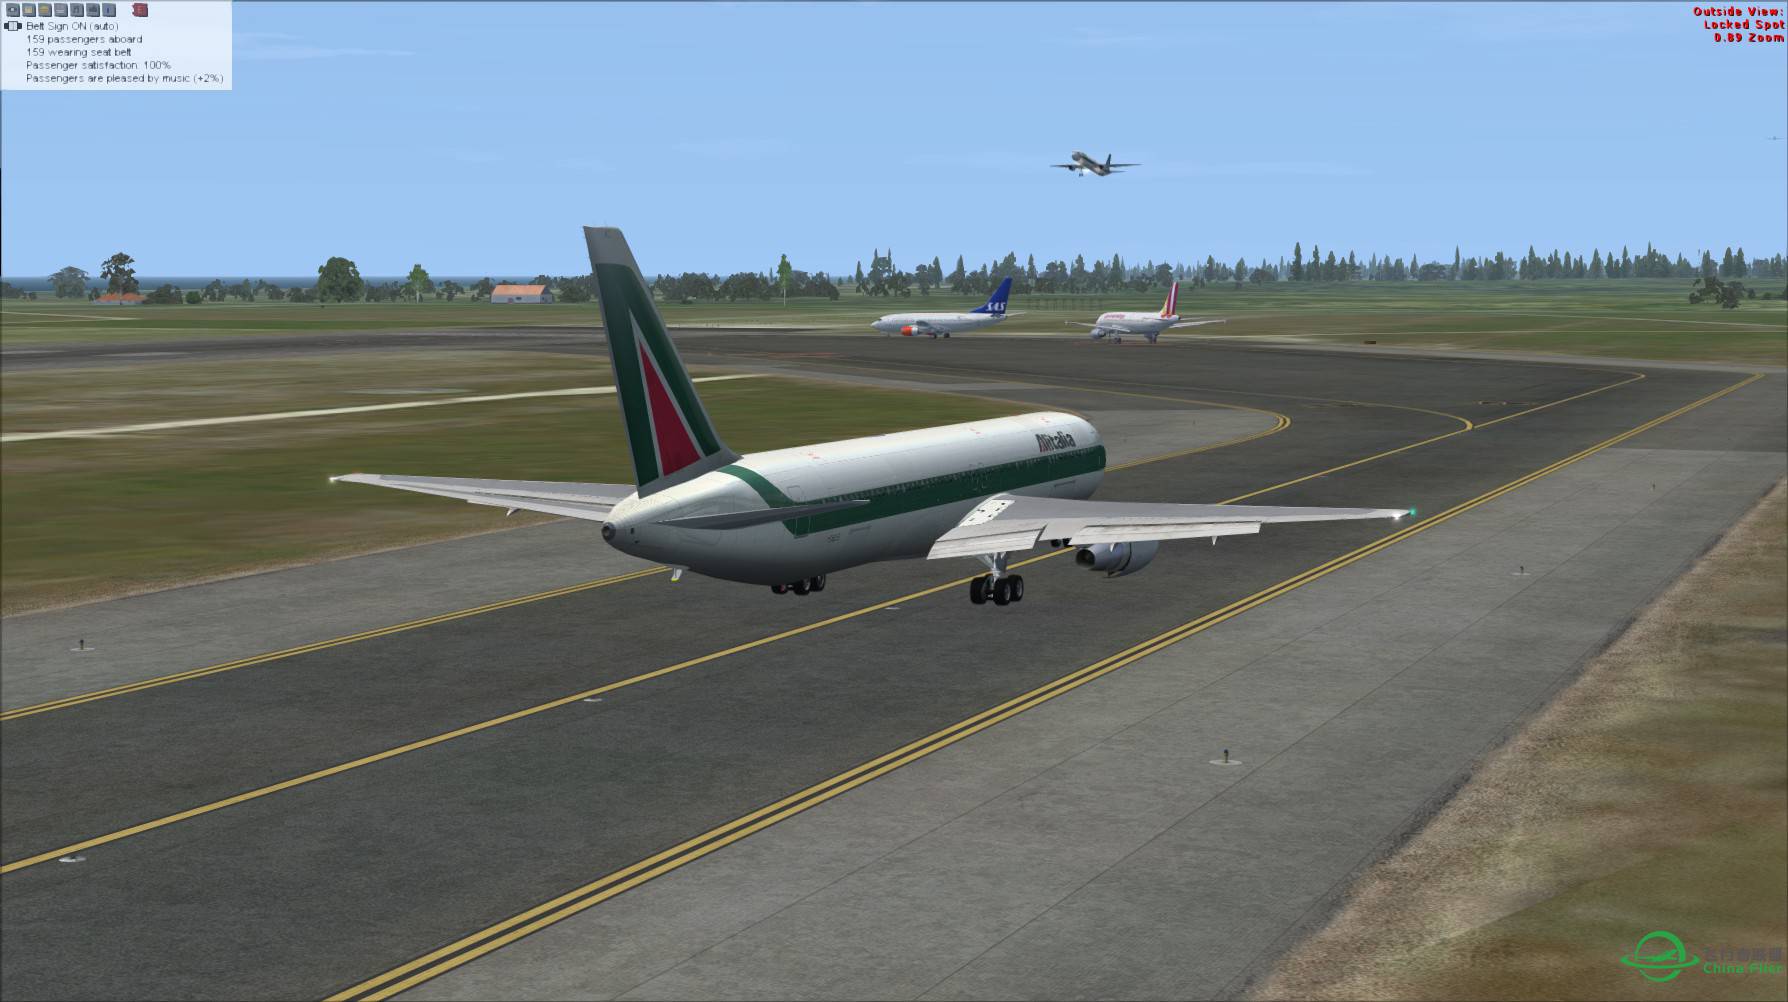 意大利航空 767-300ER 罗马-吉隆坡-2777 